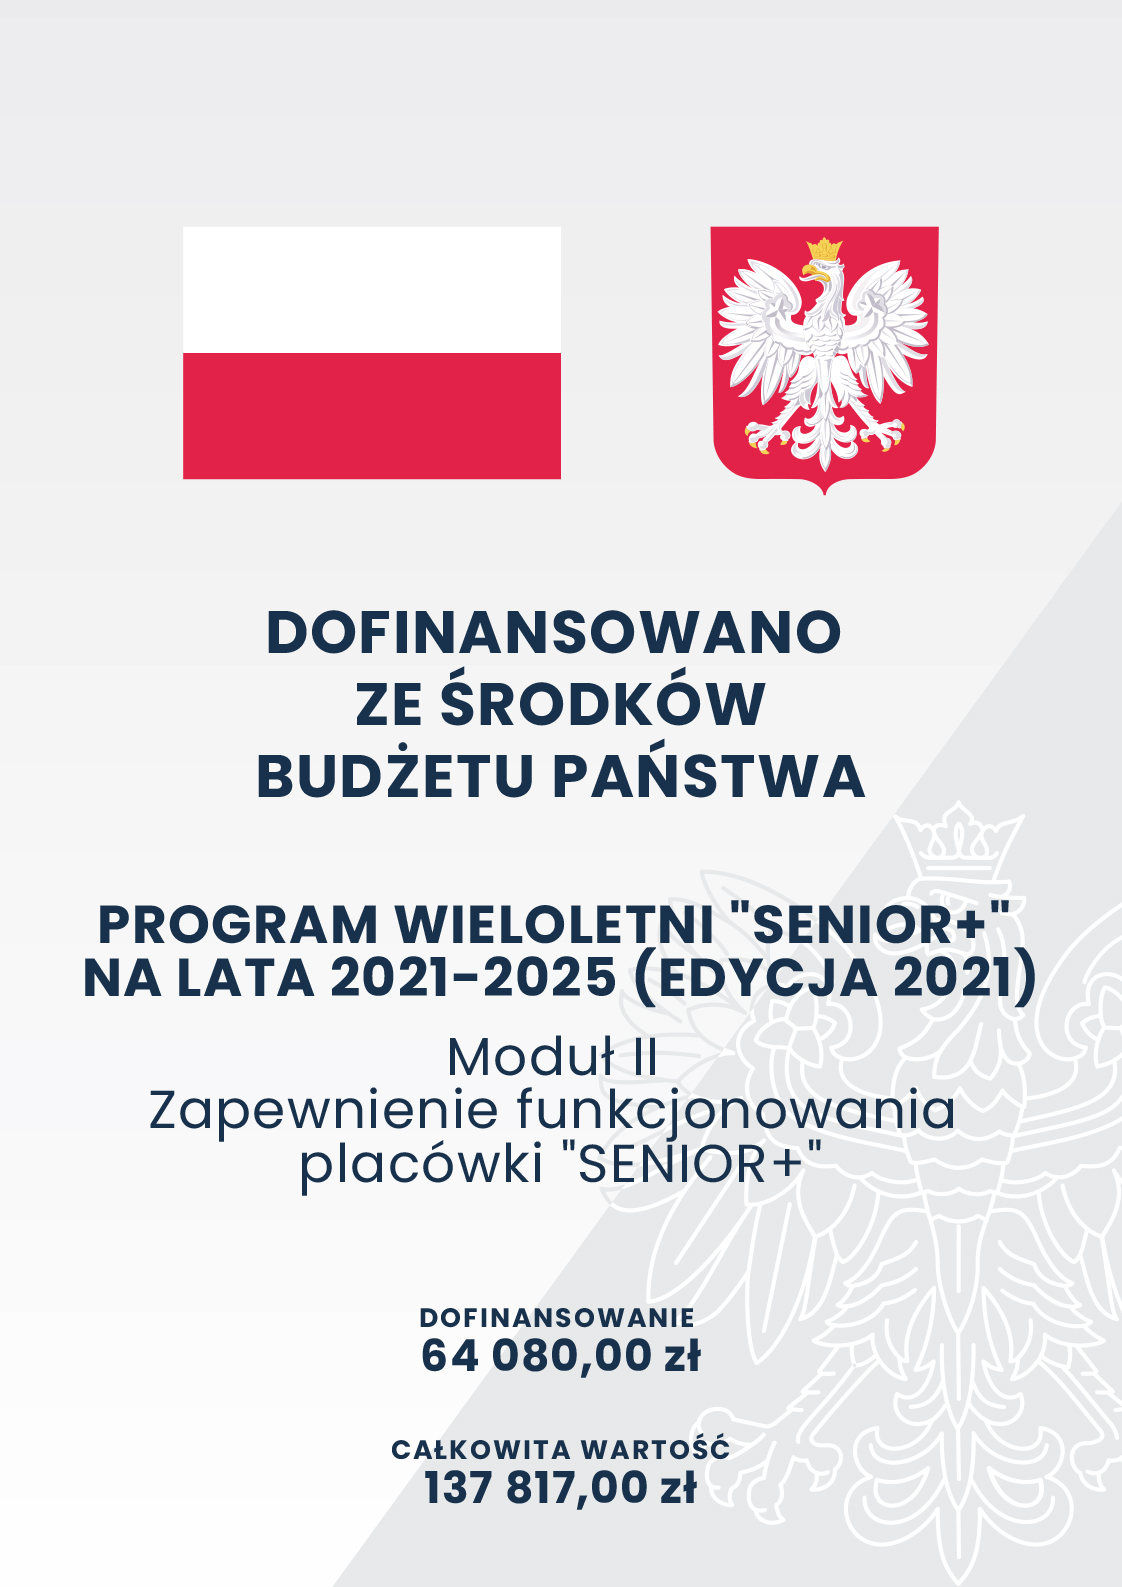 plakat w szarrościach, na którym widoczne są flaga i godło Polski. Zamieszczone treści: dofinansowano ze środków budżetu państwa; program wieloletni 